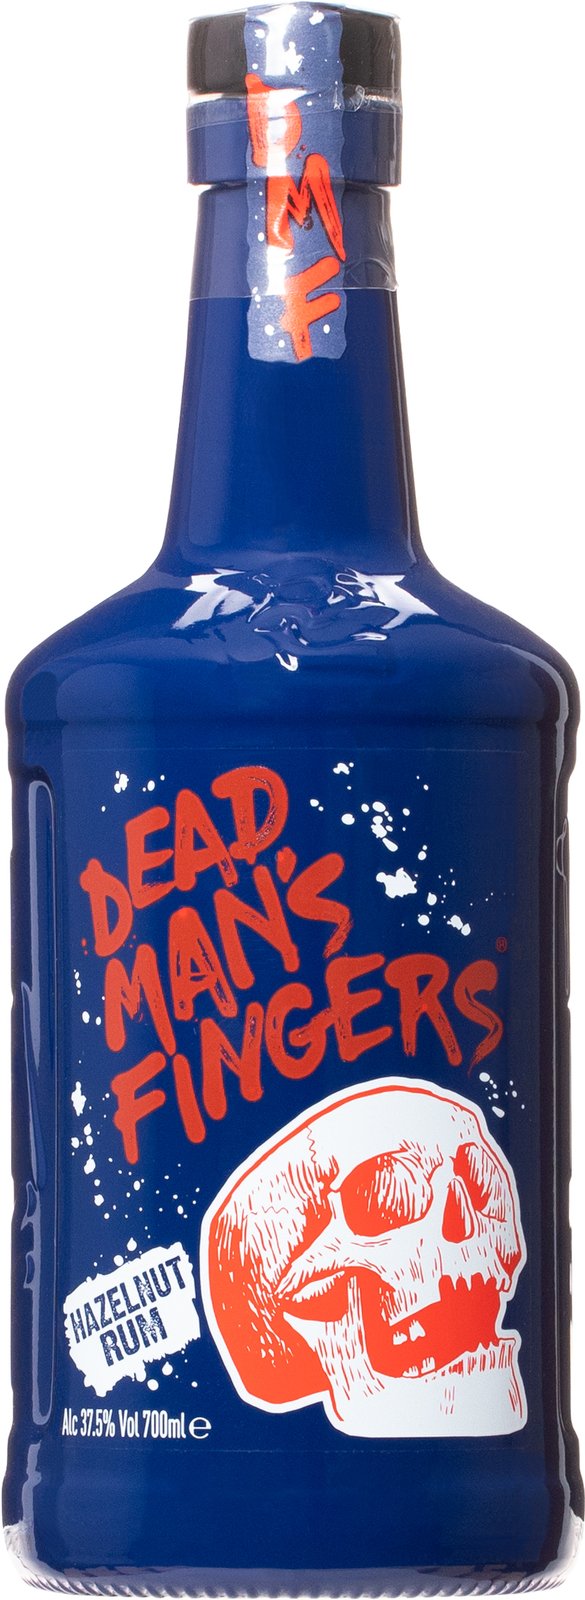 Dead Man's Fingers Hazelnut 37.5% 0.7L